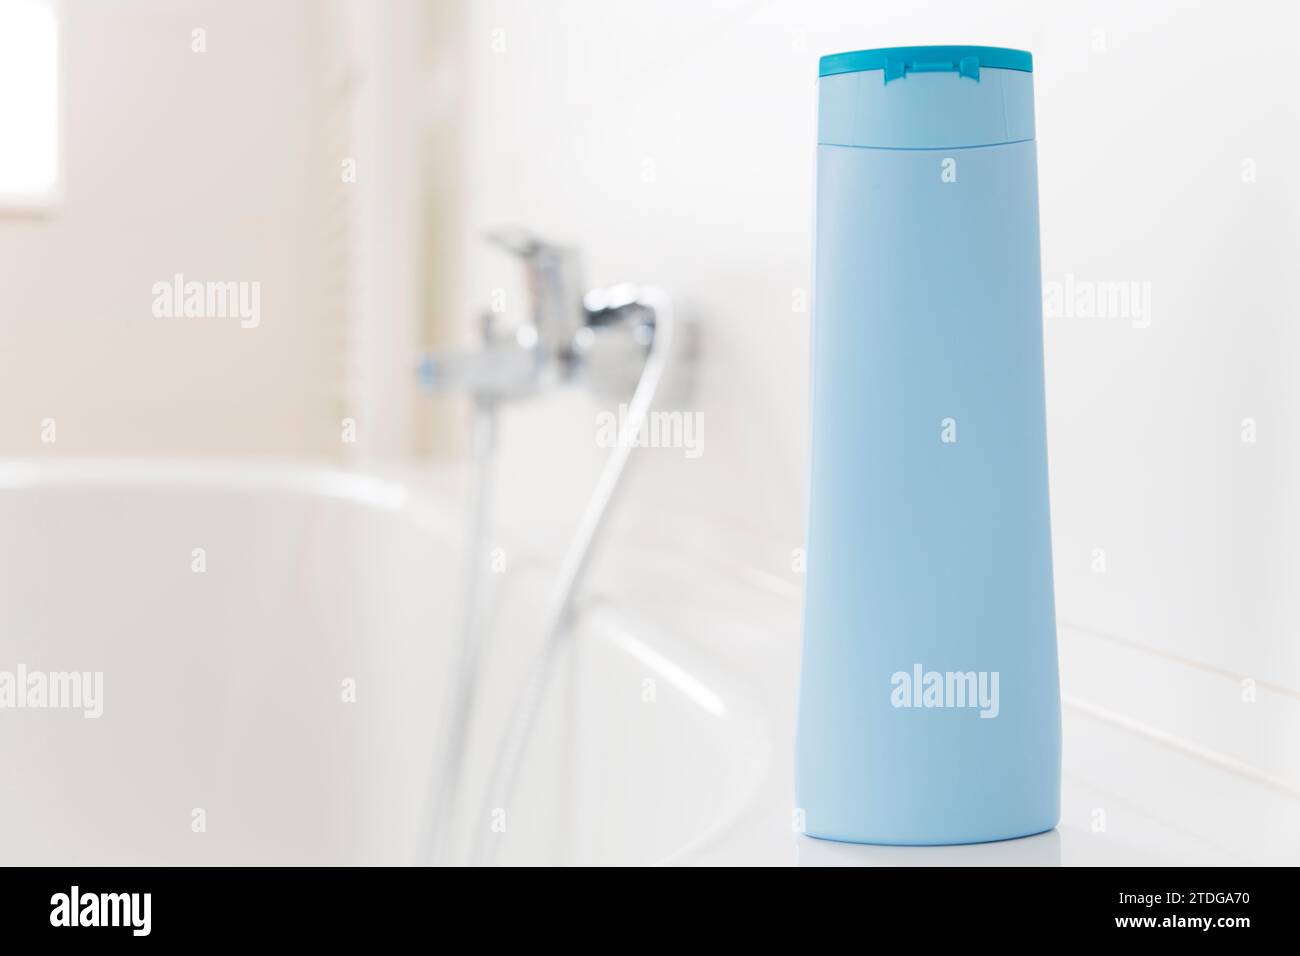 Eine Flasche Shampoo steht auf einer Badewanne in einem hellen Badezimmer - Kopierraum auf der Flasche Stockfoto